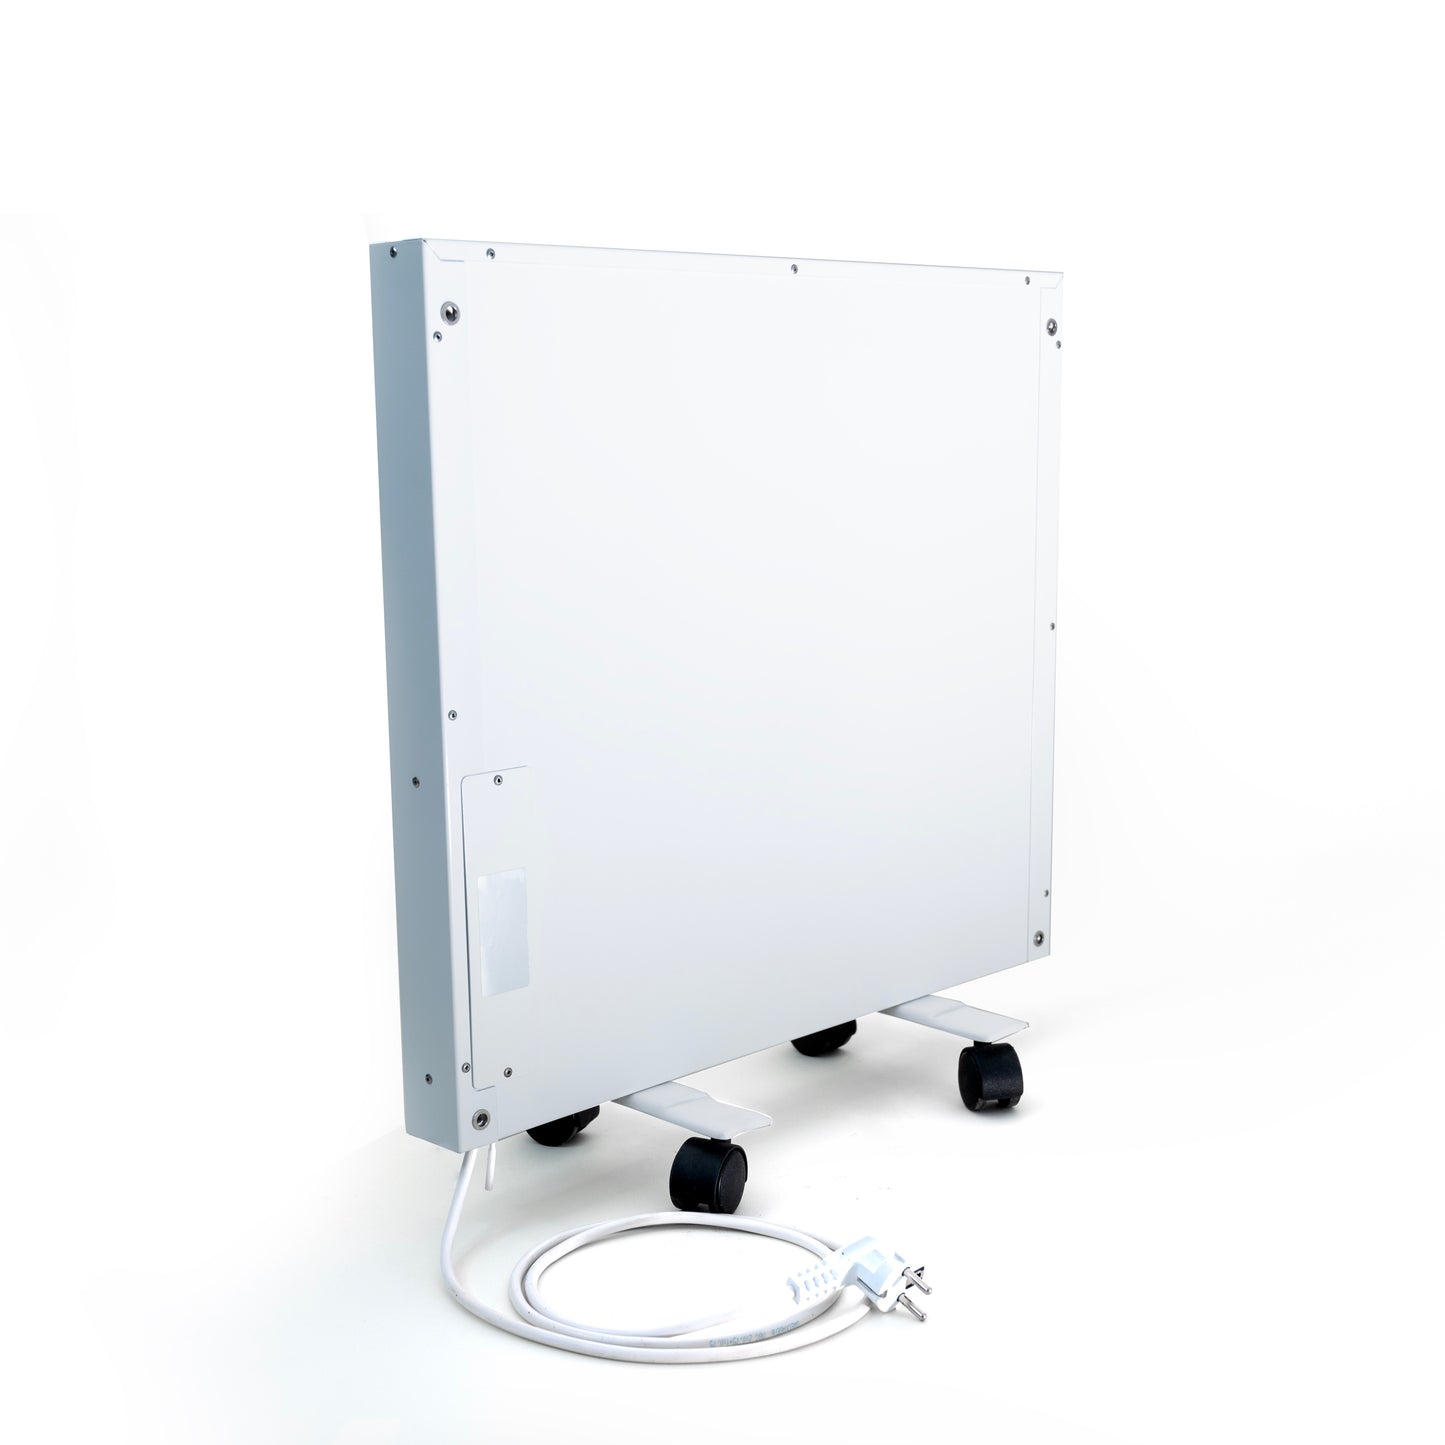 WRSP77: Компактный конвекционный обогреватель из белой стали мощностью 770 Вт с максимальным комфортом и эффективностью.